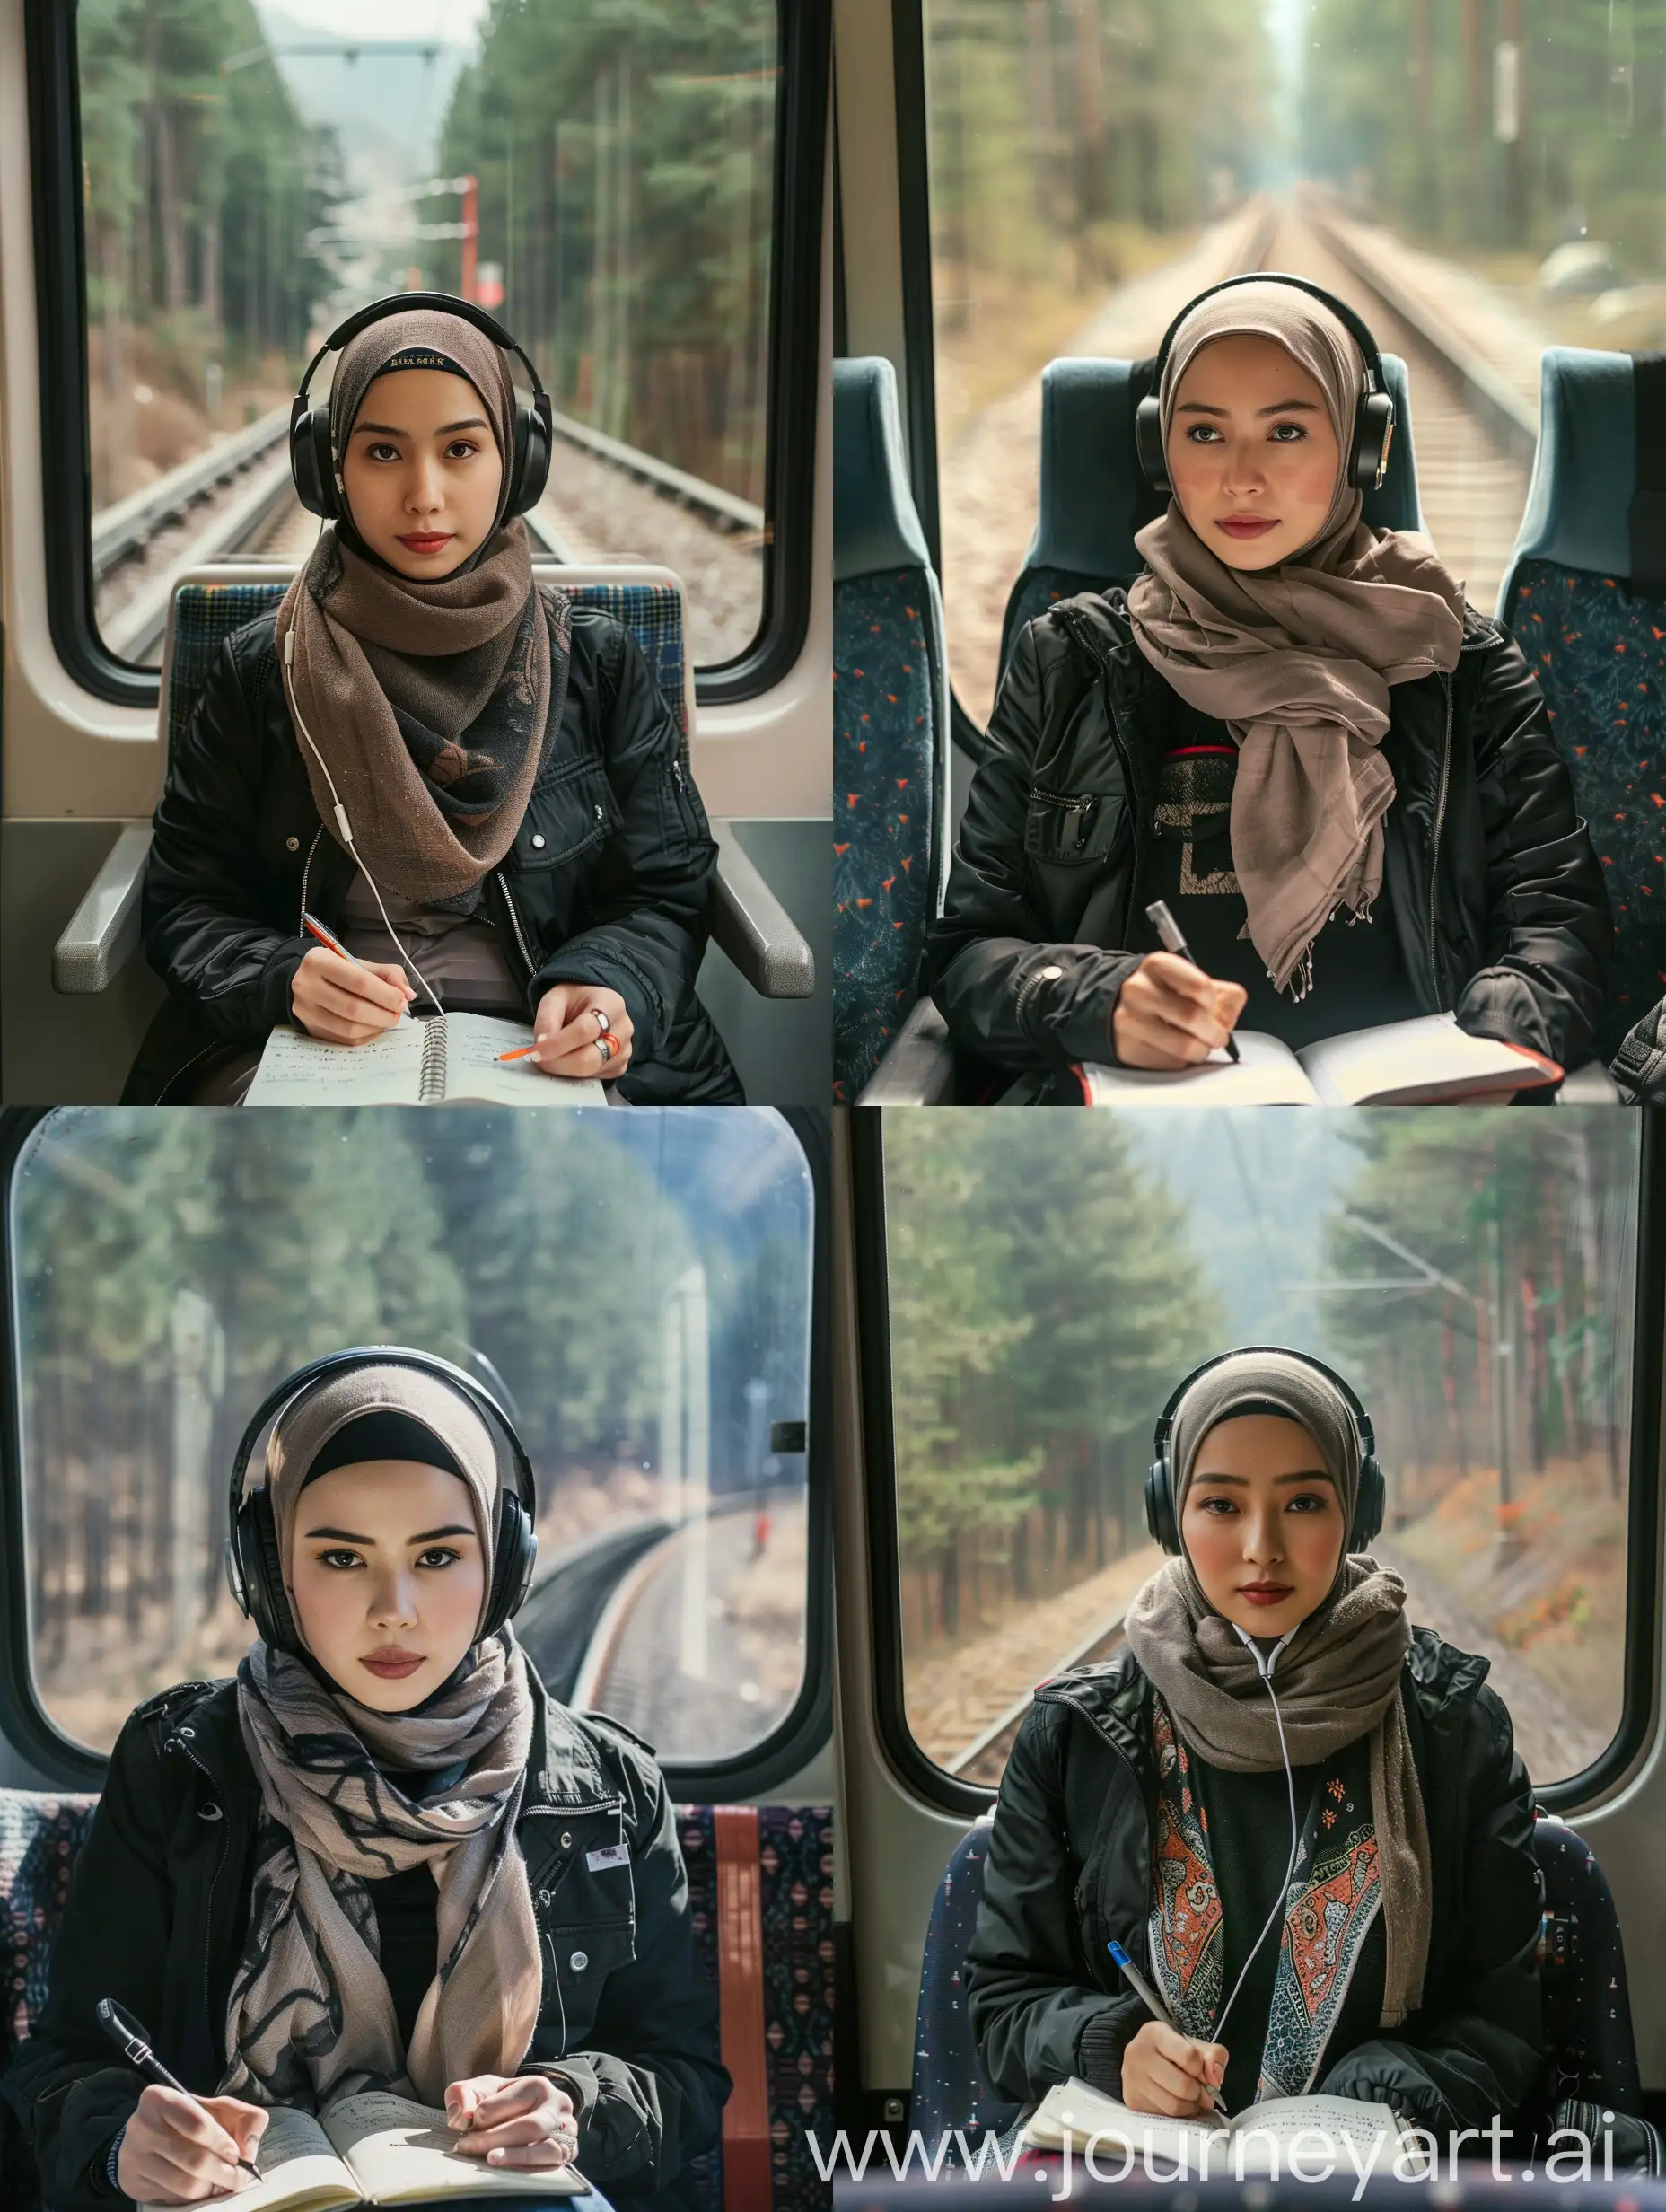 Fotografı sinematik, wanita cantik thailand hijab mengenakan jaket trucker hitam dan scarf.badan menghadap ke kamera.fokus fokus duduk. Badan menghadap ke depan.dengan headphone, duduk di kursi kereta, duduk di lorong kereta, kereta tanpa penumpang, potret solo menulis di jurnal, suasana estetis, Anda bisa melihat pepohonan dan hutan dari jendela kereta